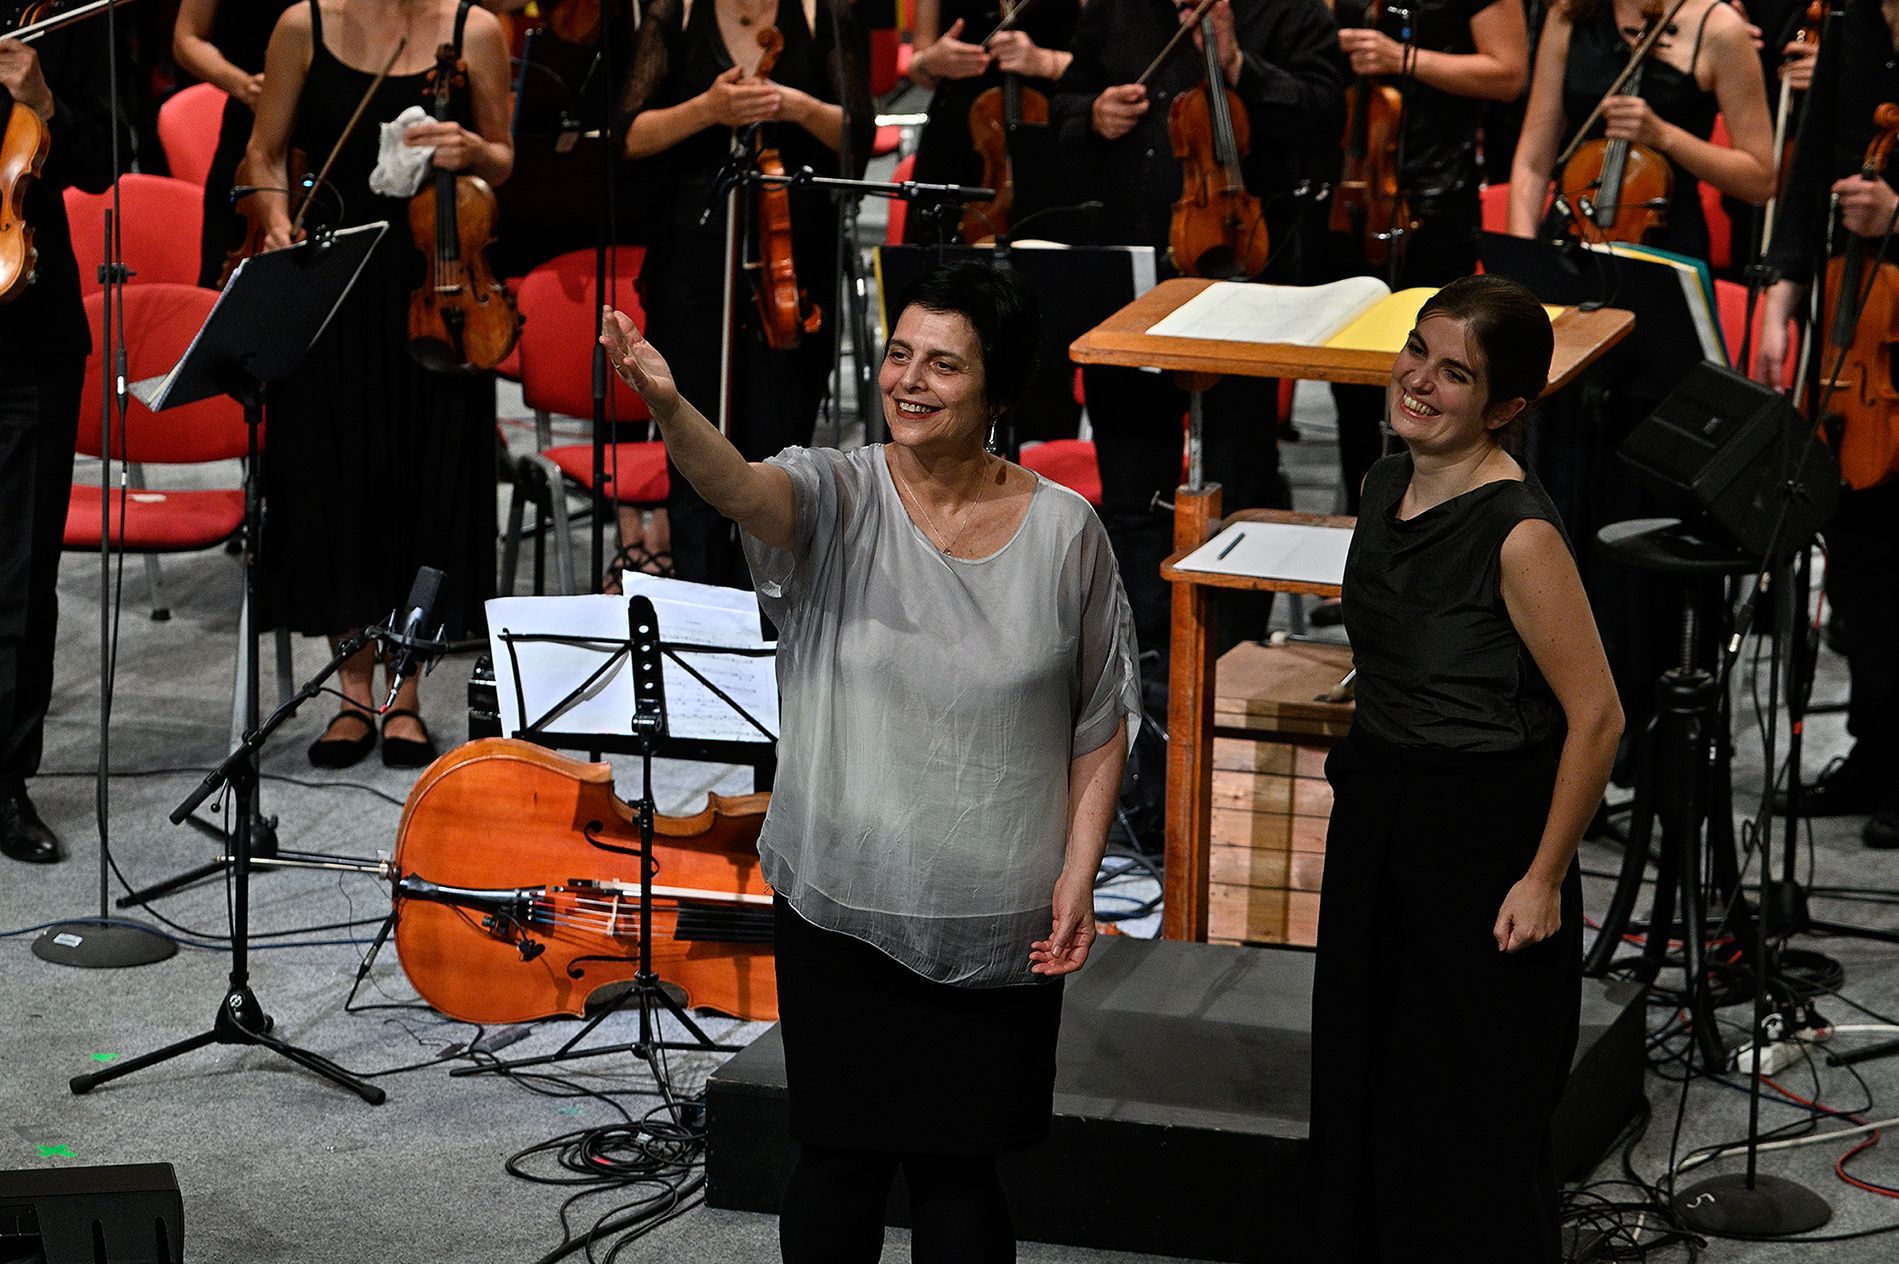 Ostravské dny, orchestra opening 25. srpna